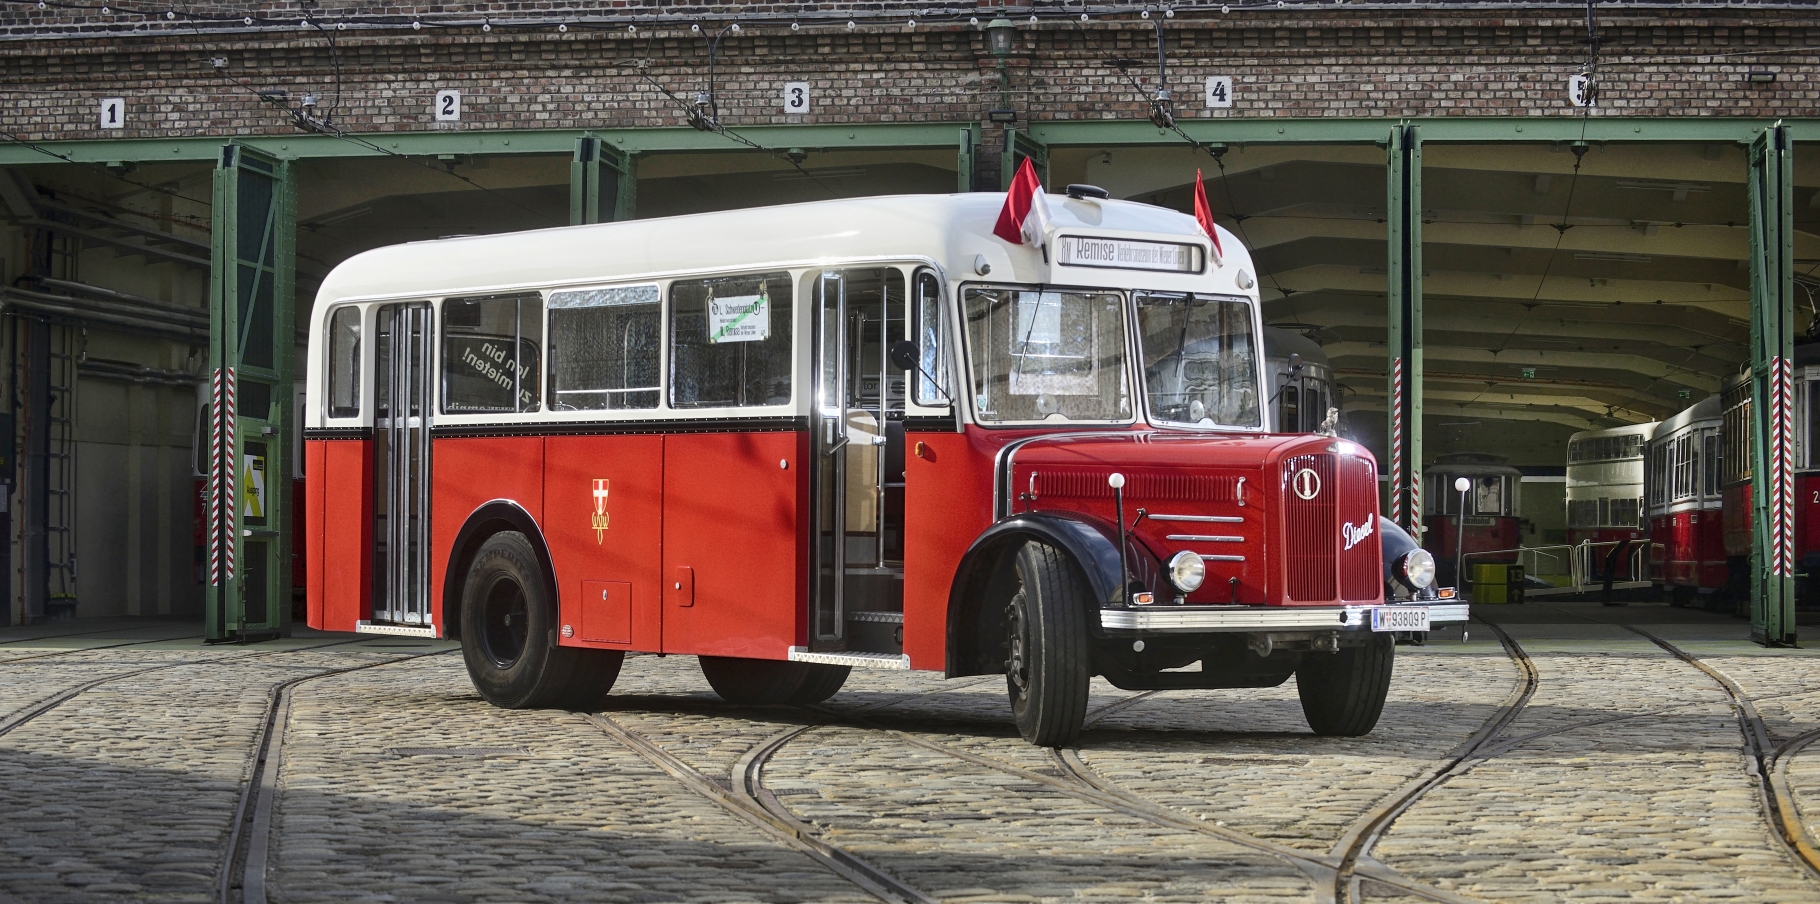 Ab 15. März 2015 verkehrt an den Wochenenden ein Oldtimer-Shuttlebus (Linie 78M) aus dem Jahr 1949 zwischen Schwedenplatz und dem Verkehrsmuseum Remise in Erdberg.